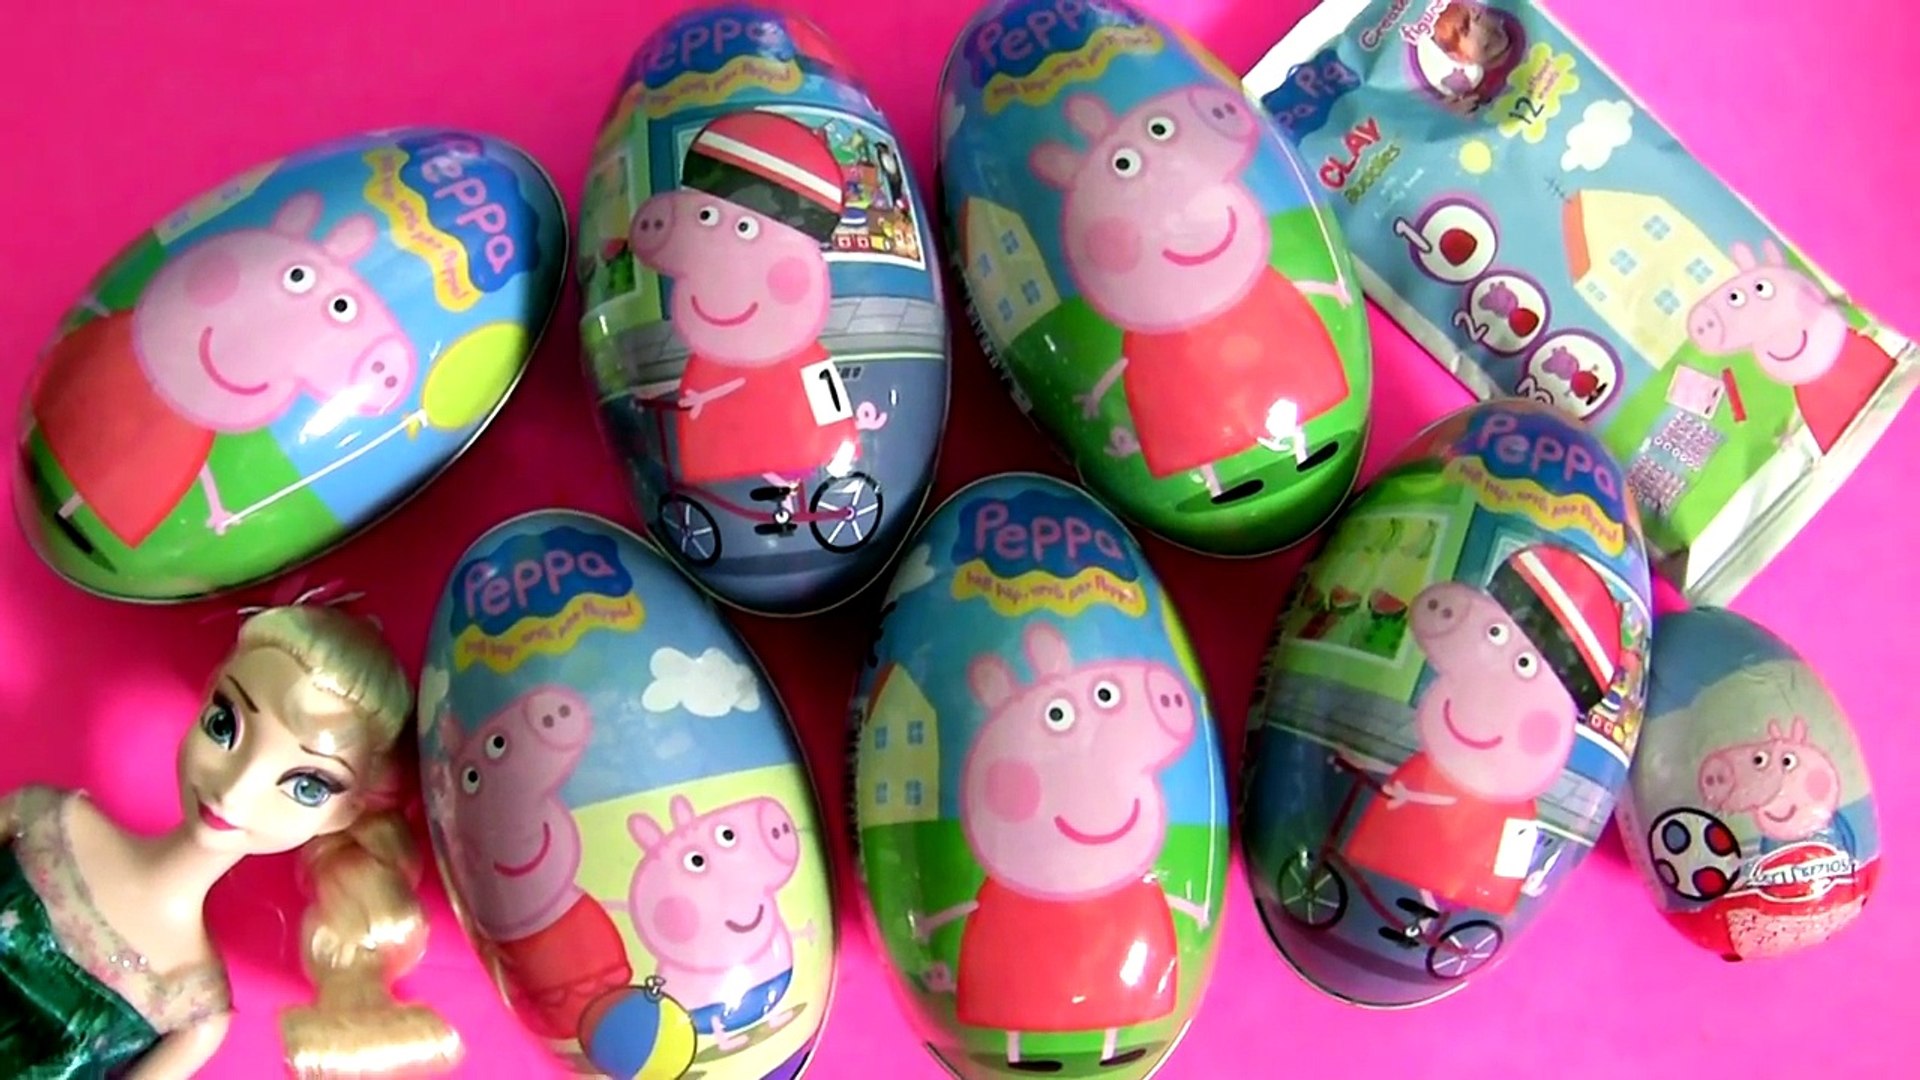 New Peppa Pig Surprise Eggs + Clay Buddies Blind Bags Nickelodeon Huevos  Sorpresa - video dailymotion